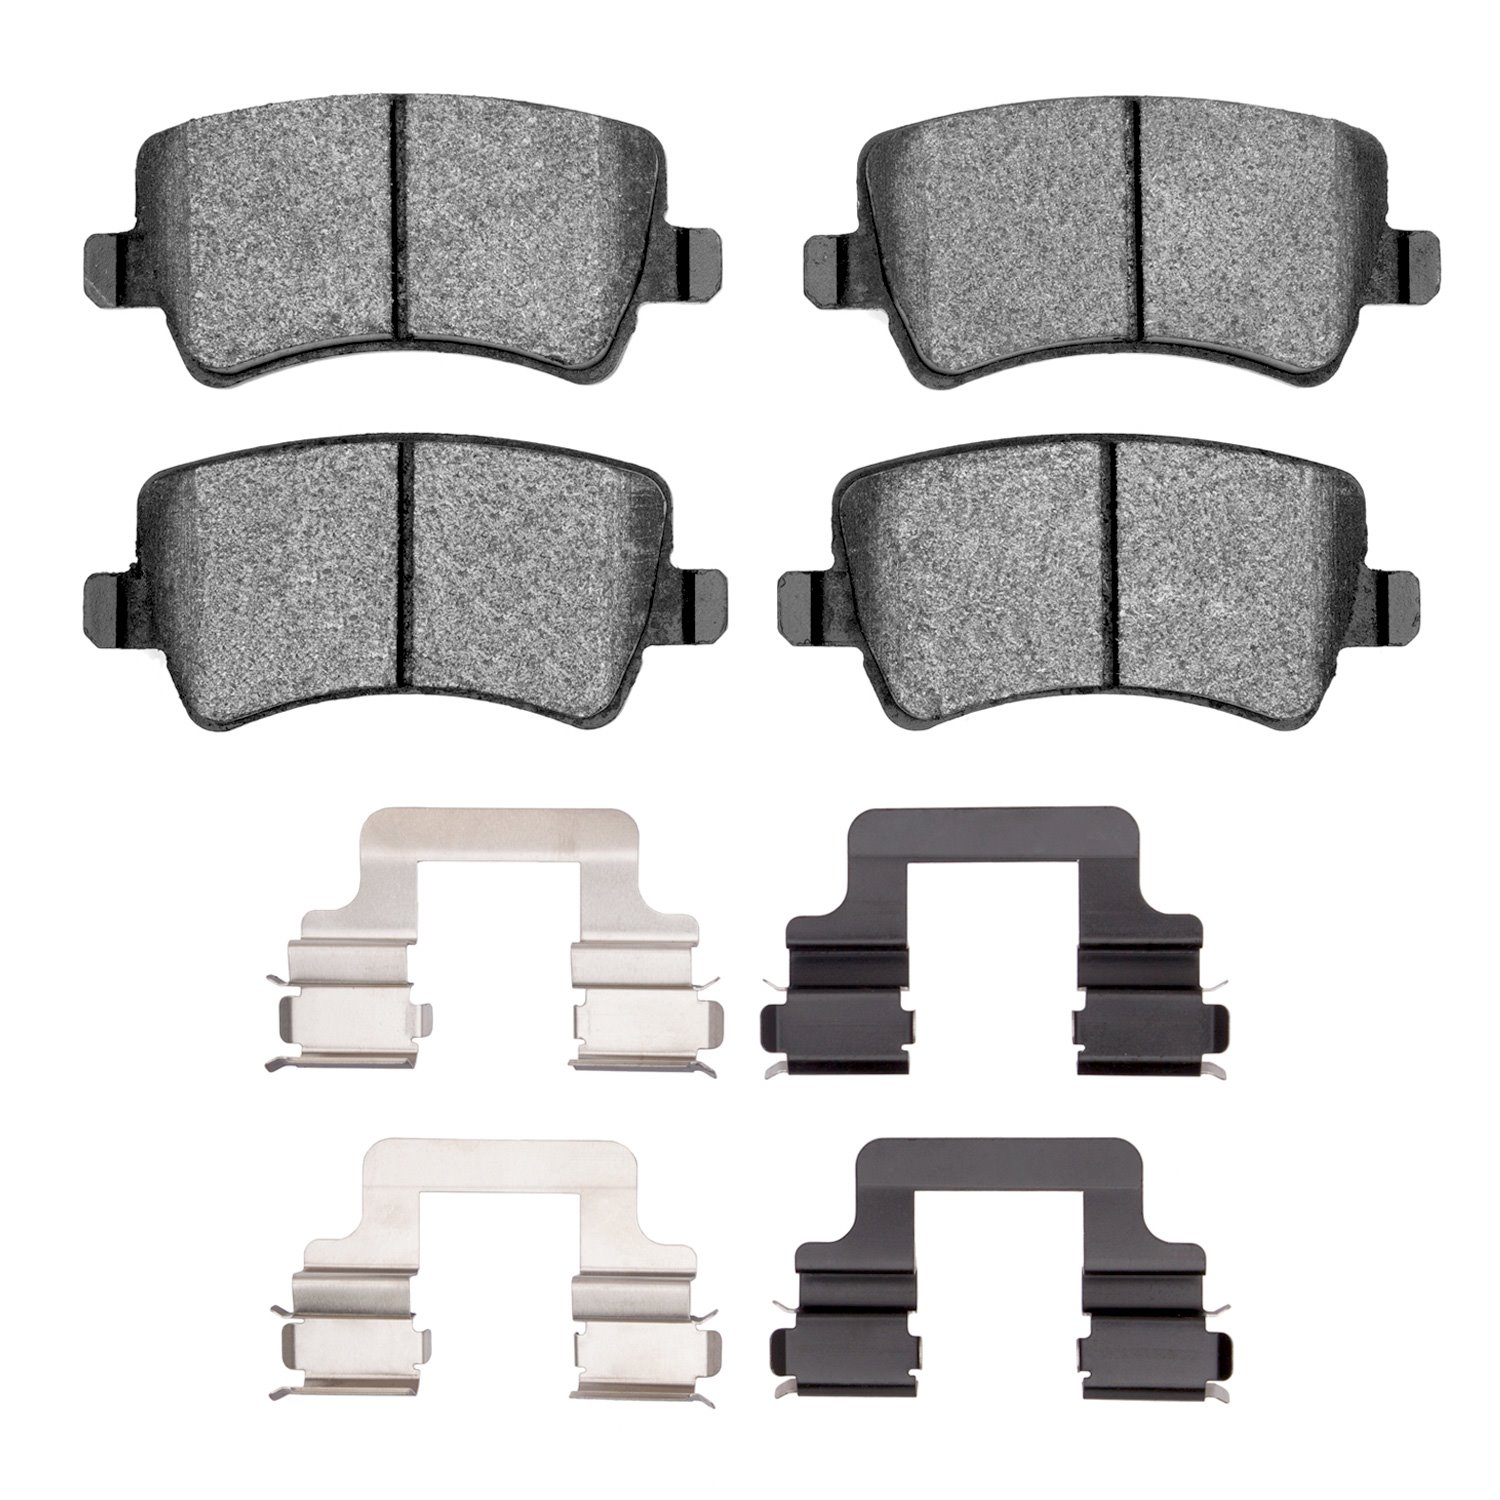 1311-1307-02 3000-Series Semi-Metallic Brake Pads & Hardware Kit, 2007-2018 Volvo, Position: Rear